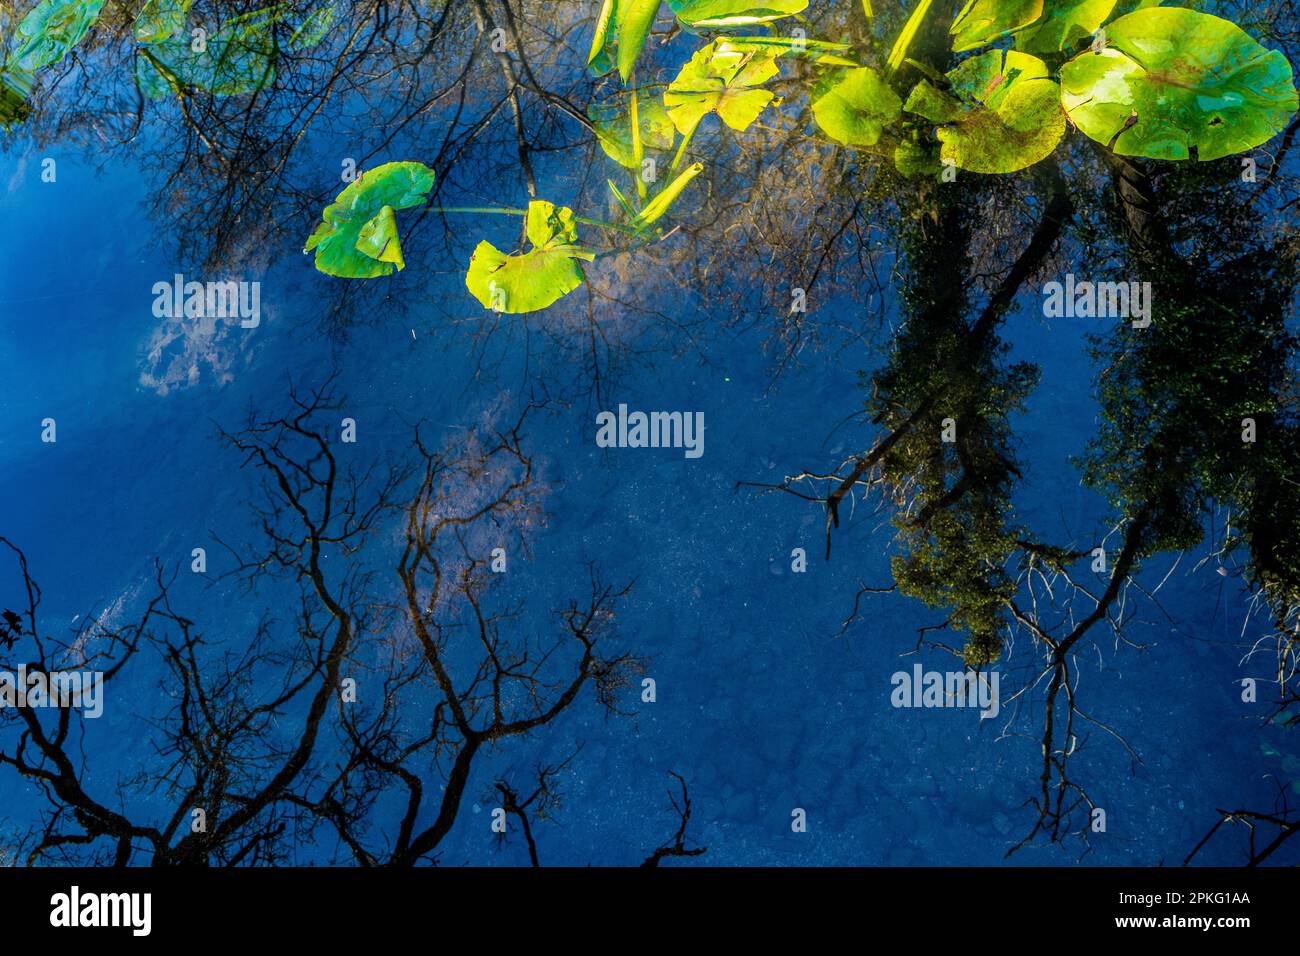 Image surréaliste et abstraite d'un arbre reflétée dans un étang avec des nénuphars. Concept. Inversion. Surréalisme. Mining-cintrage. Coloré. Étrange. Banque D'Images